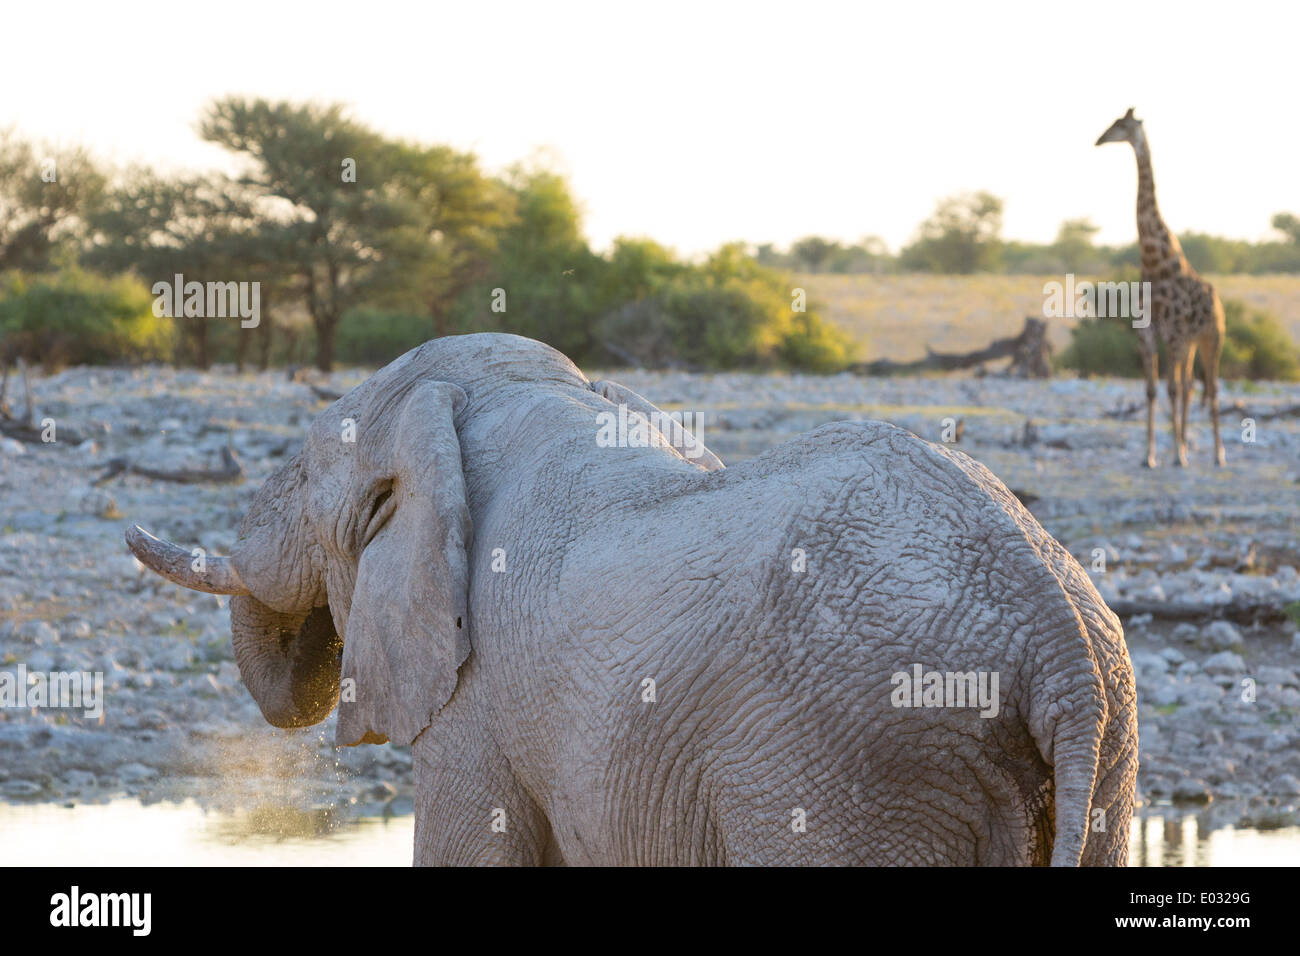 ETOSHA, NAMIBIA African elephant (Loxodonta africana) drinking. Giraffe in background. Stock Photo